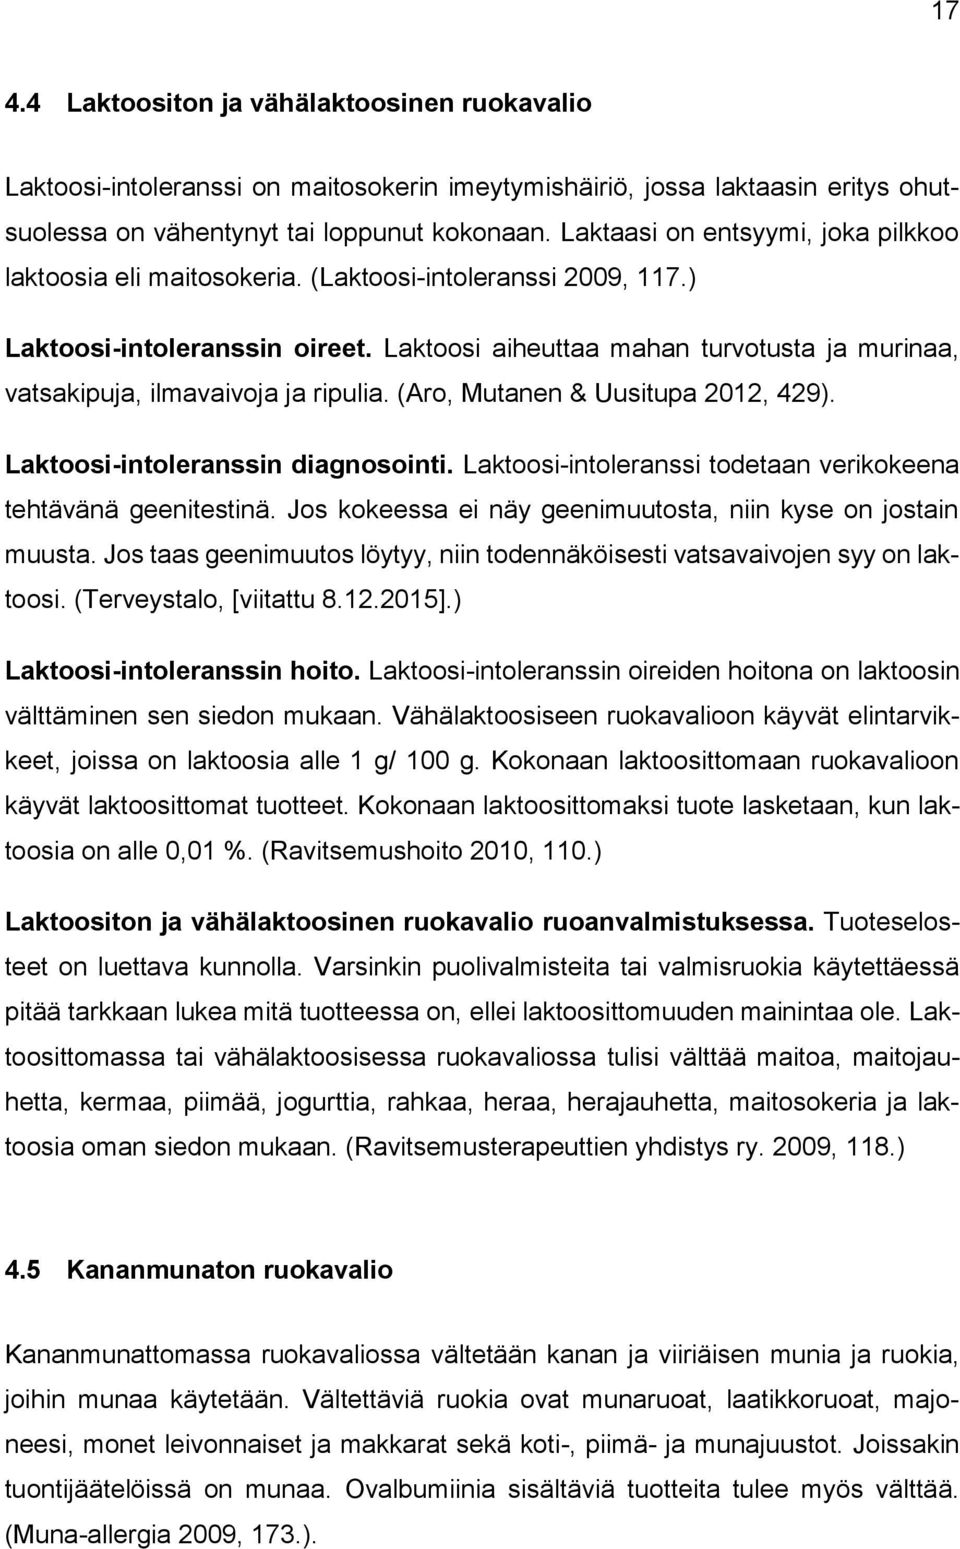 Laktoosi aiheuttaa mahan turvotusta ja murinaa, vatsakipuja, ilmavaivoja ja ripulia. (Aro, Mutanen & Uusitupa 2012, 429). Laktoosi-intoleranssin diagnosointi.